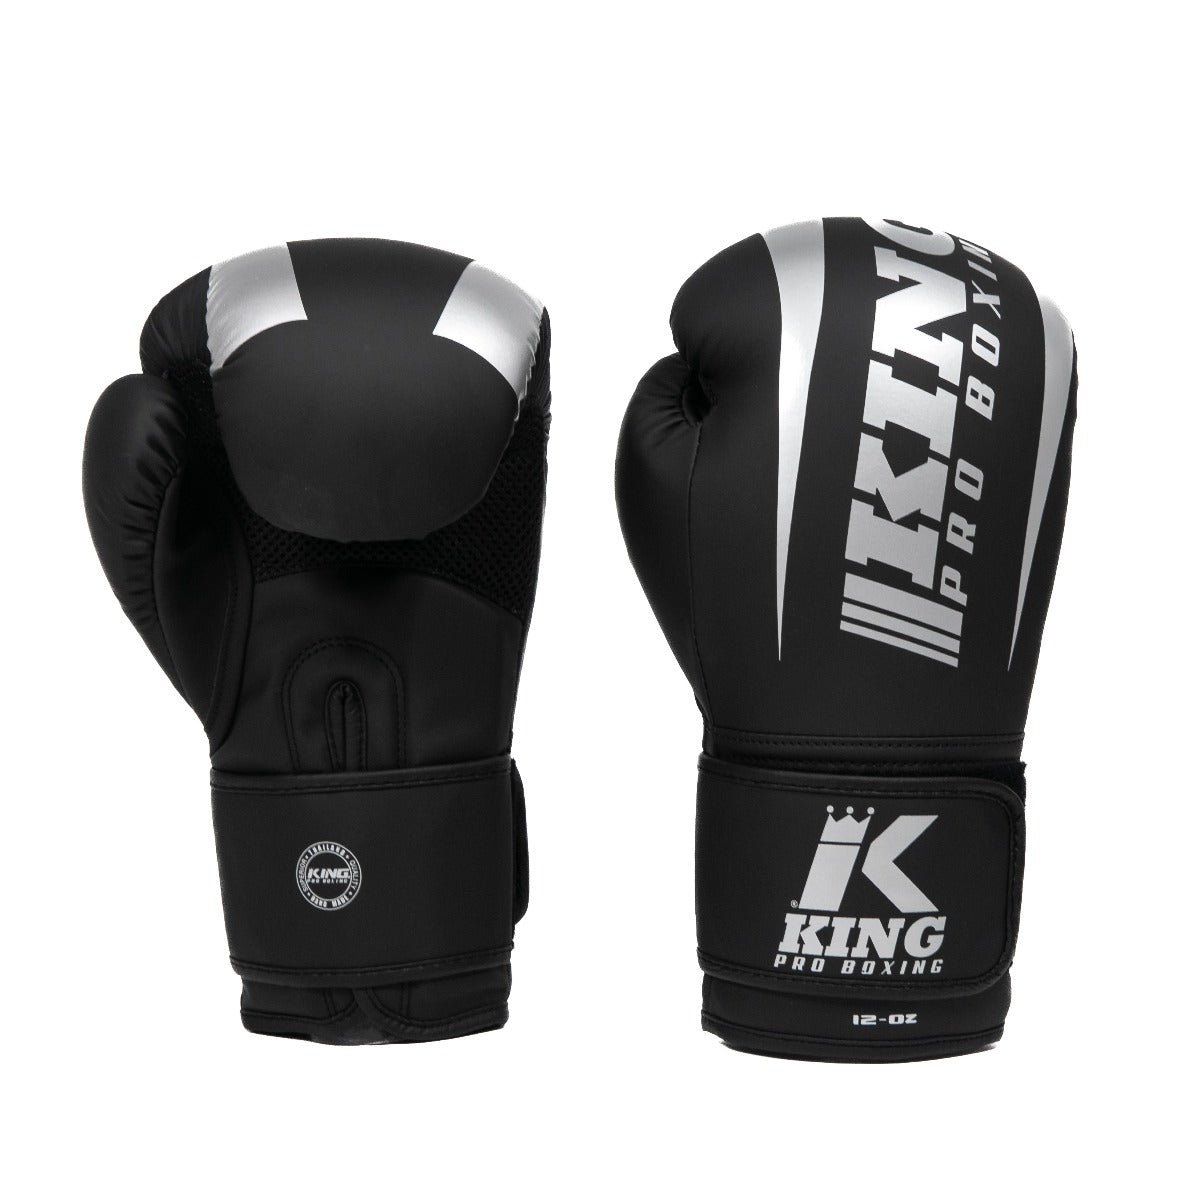 Gants de boxe King PRO boxing - REVO 7